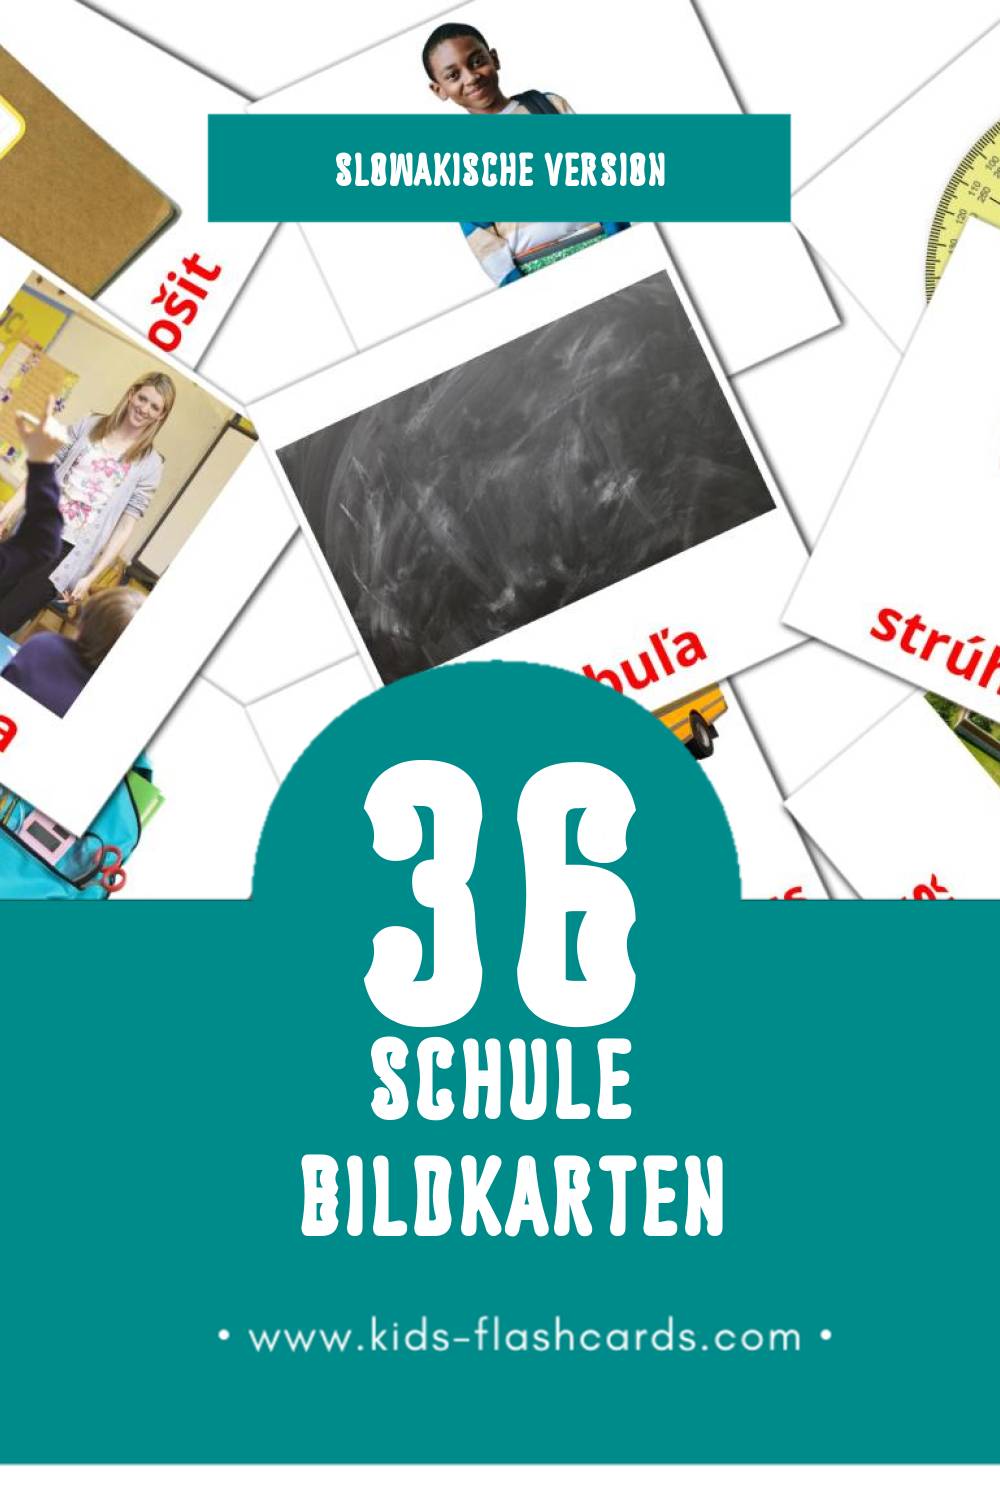 Visual škola Flashcards für Kleinkinder (36 Karten in Slowakisch)